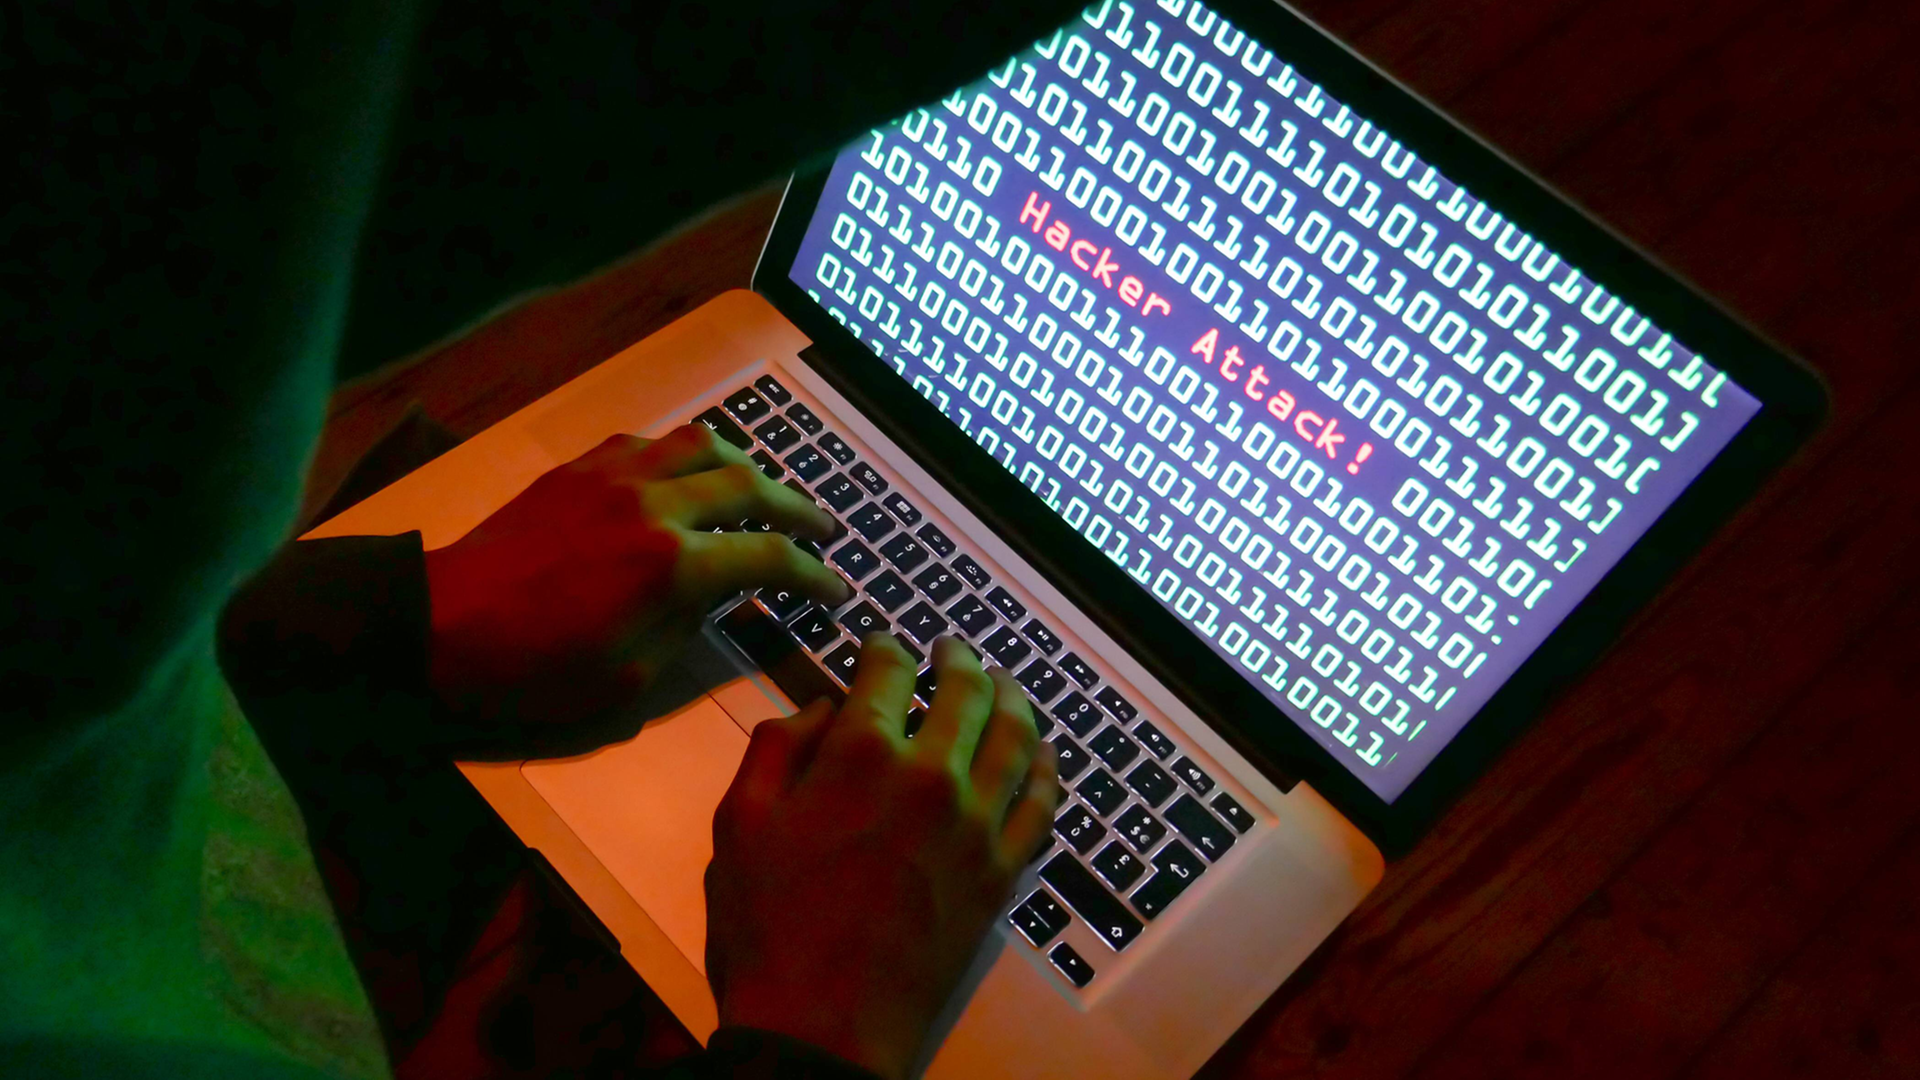 Symbolbild: Mensch sitzt vor einem Rechner, auf dem Bildschirm zu sehen: "Hacker Attack!"